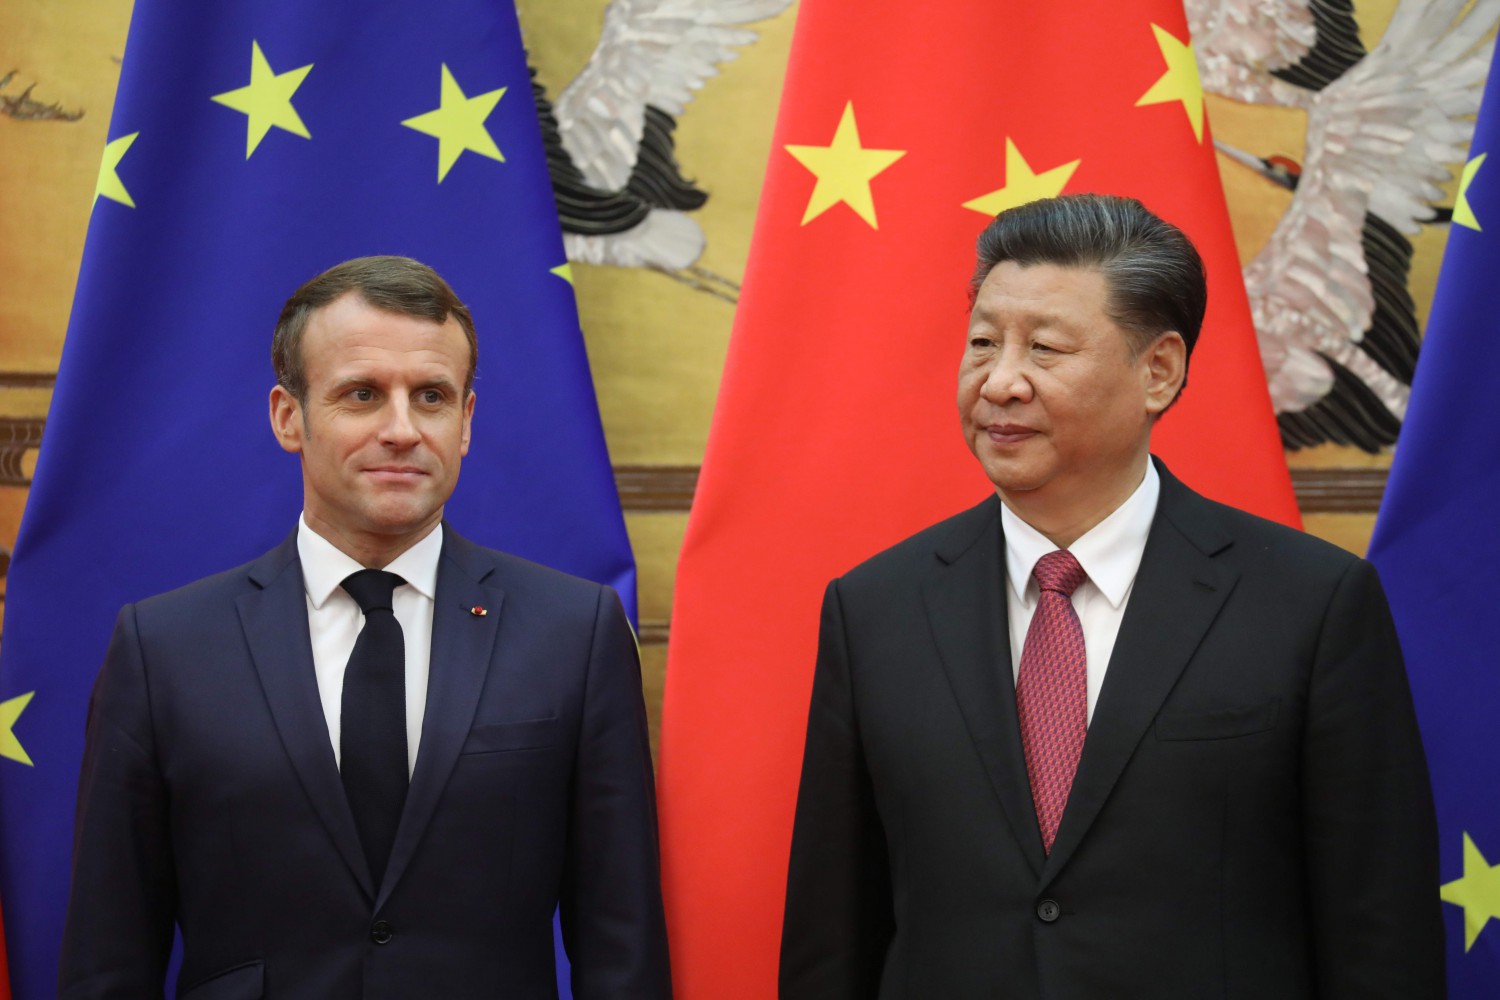 Xi arriva in Europa, snobba l’Italia e si mette in affari con la Francia